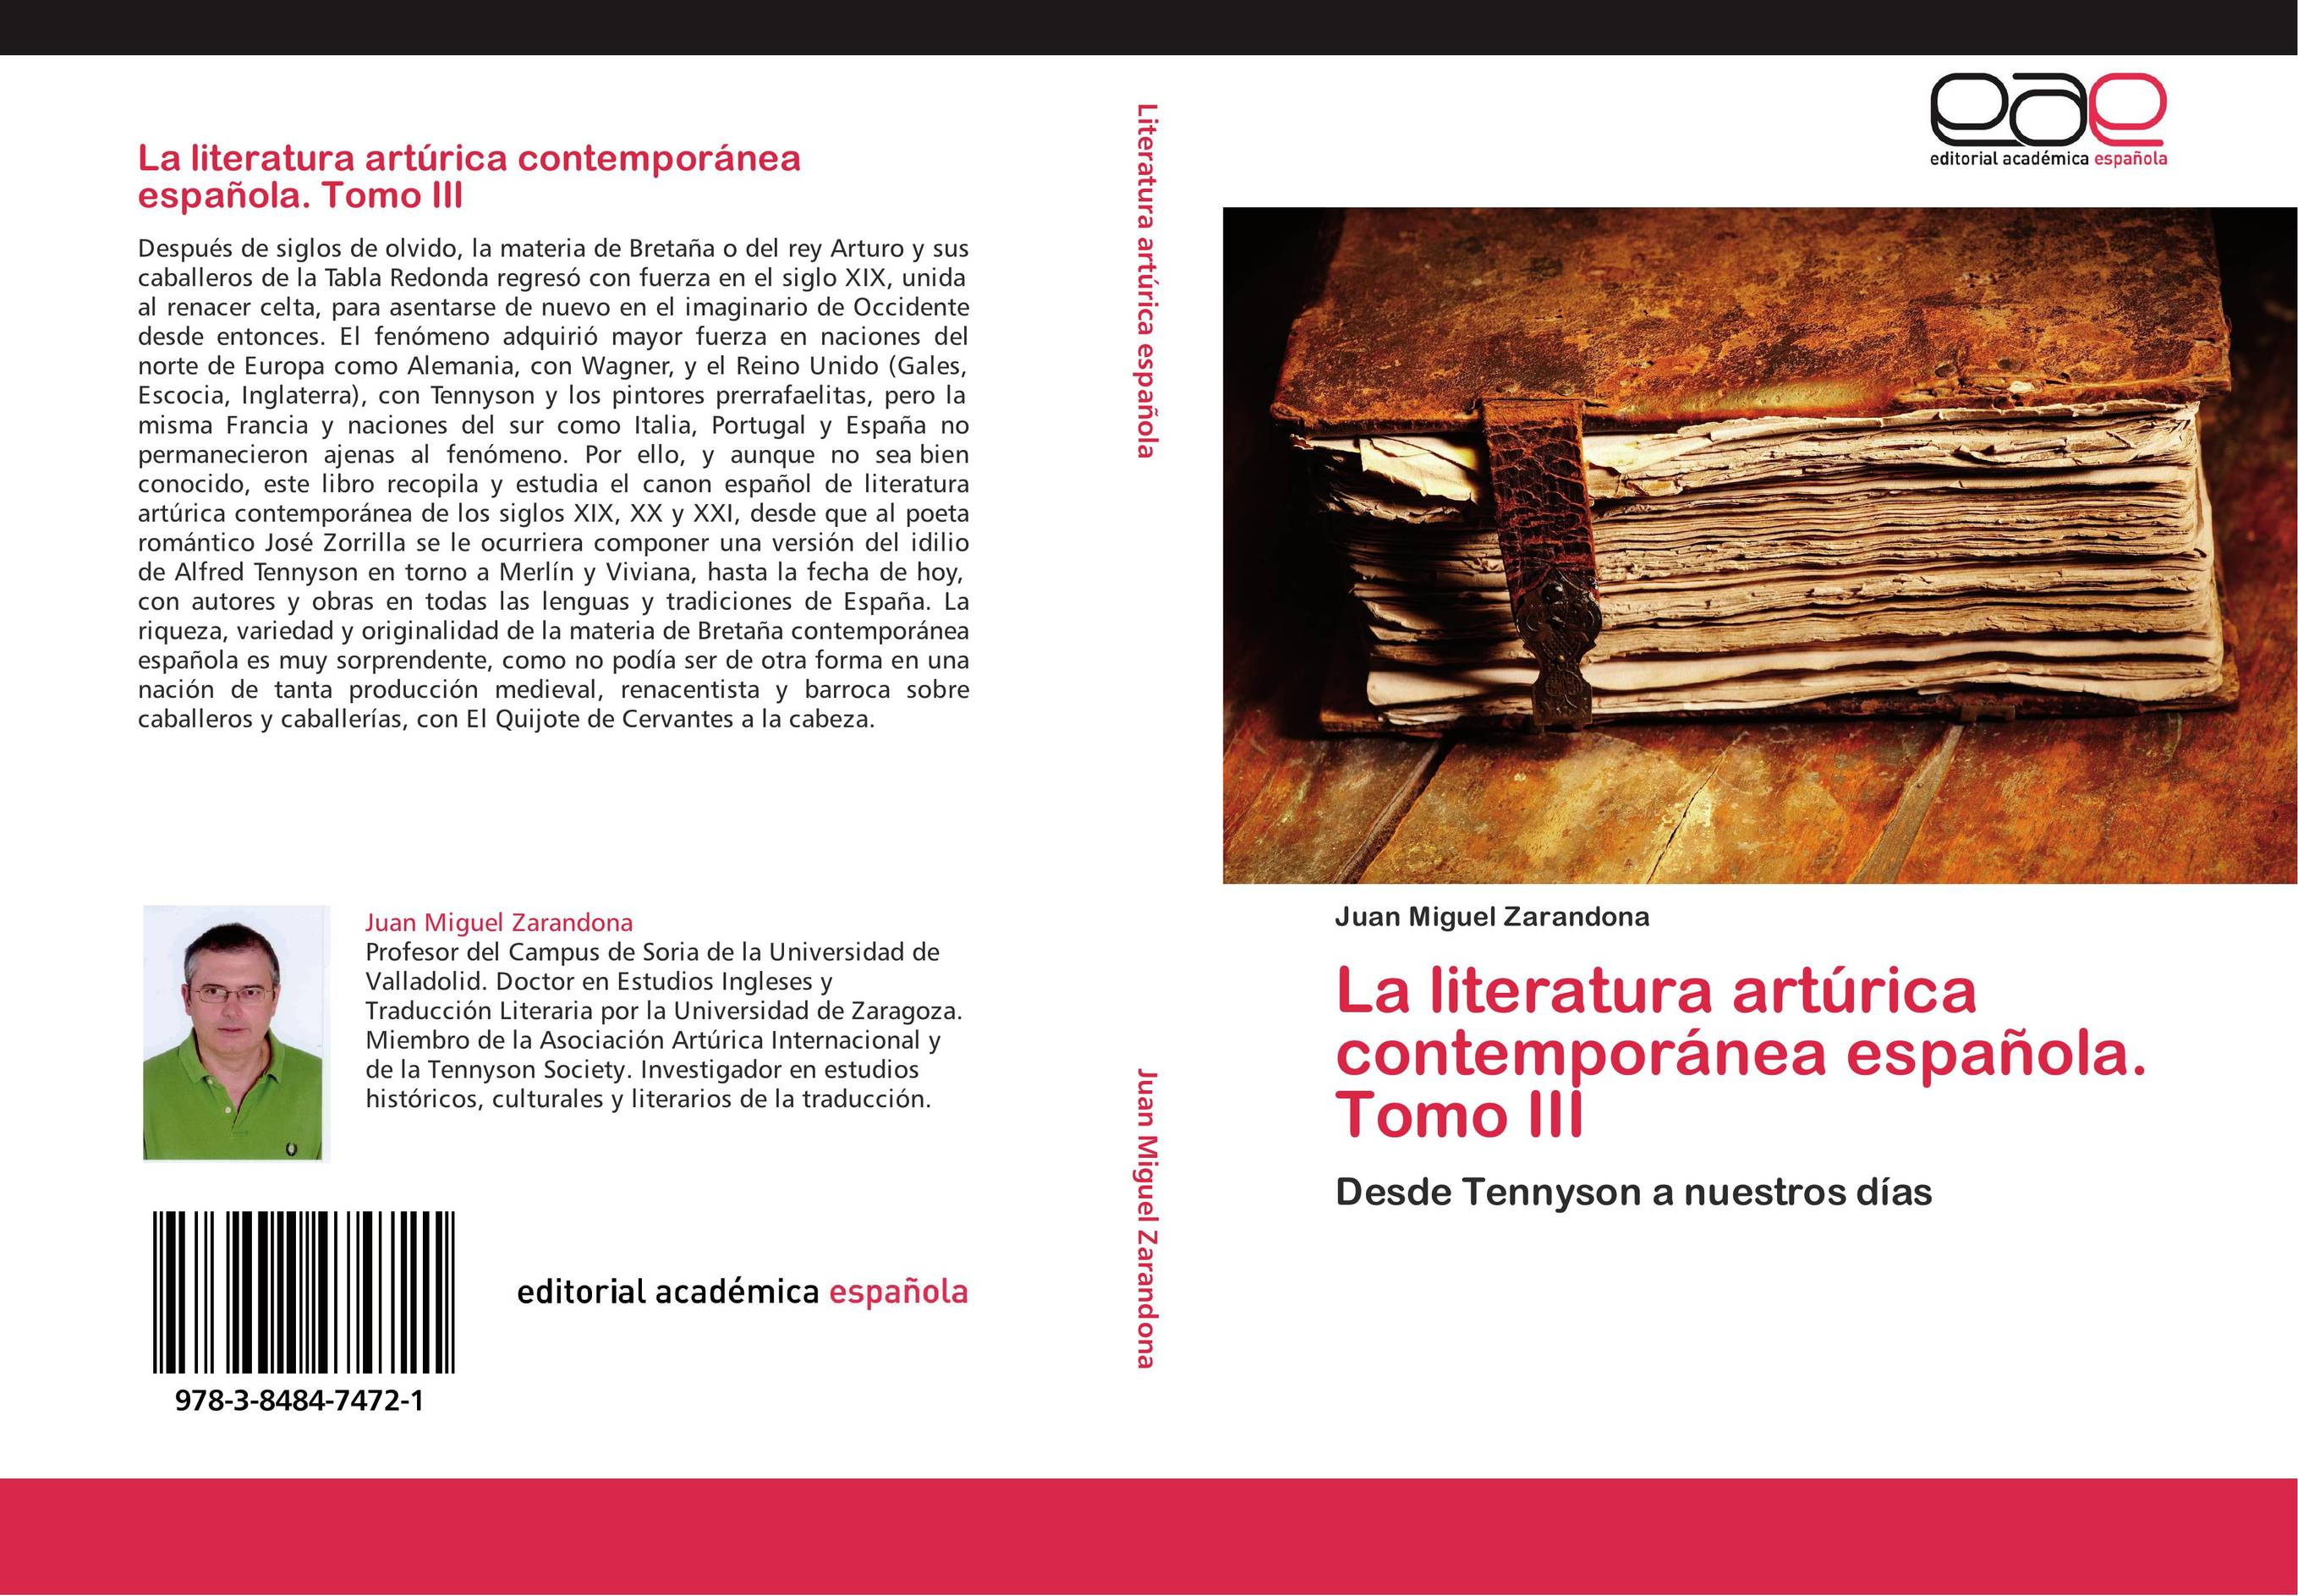 La literatura artúrica contemporánea española. Tomo III